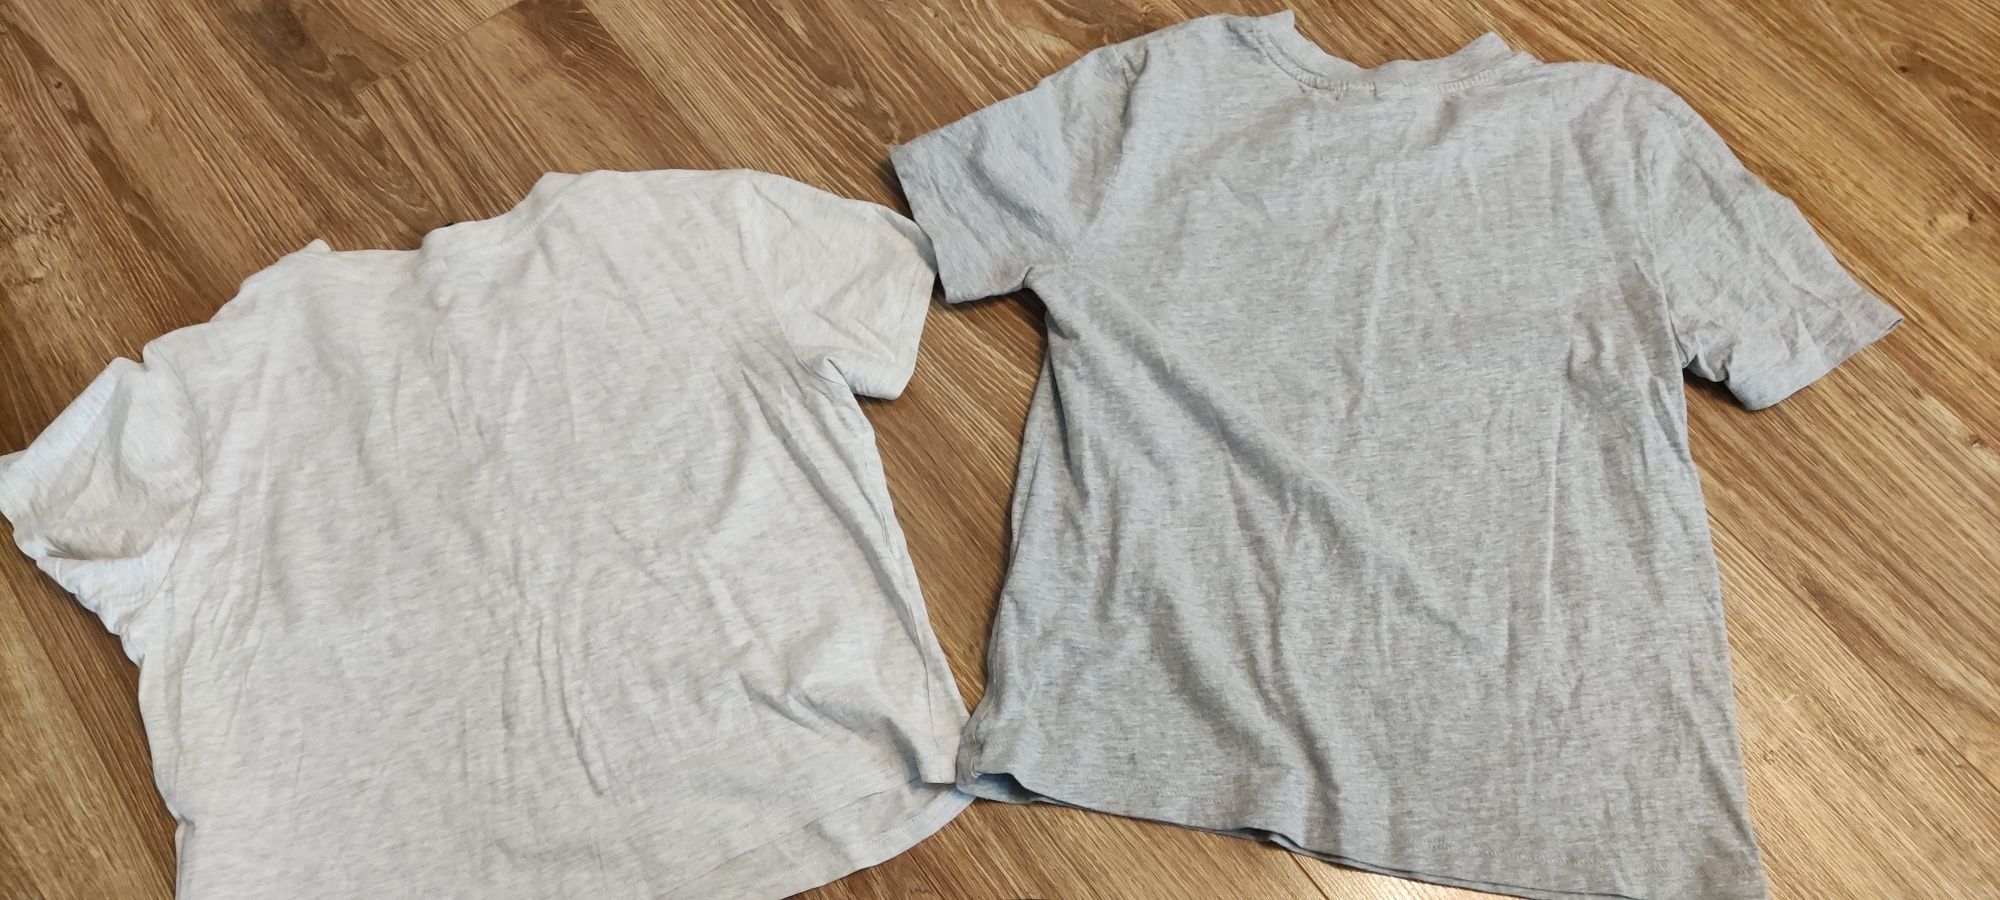 2 koszulki dziecięce z nadrukiem